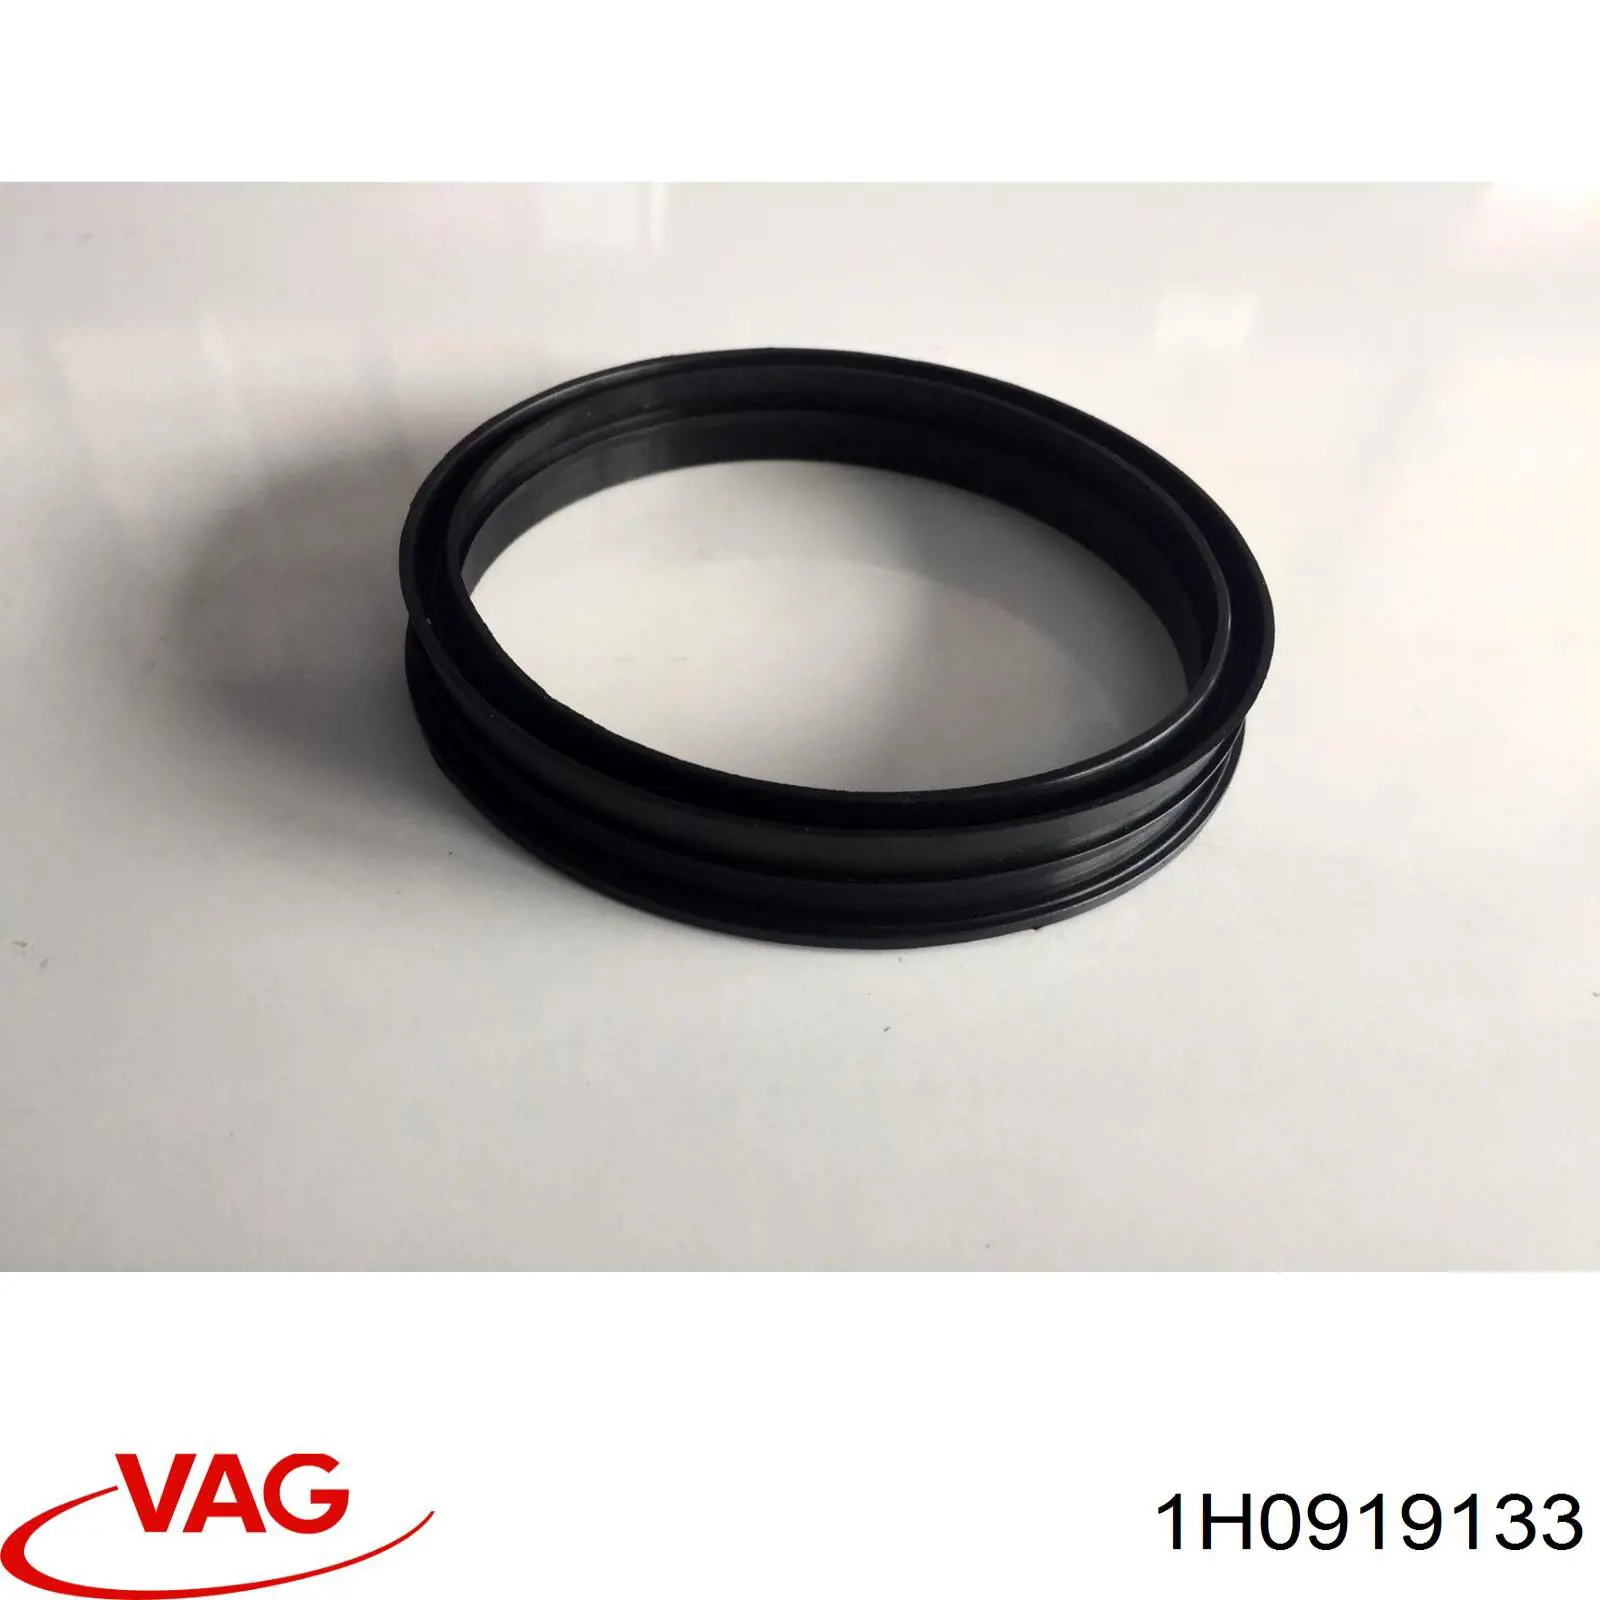 1H0919133 VAG прокладка датчика уровня топлива /топливного насоса (топливный бак)